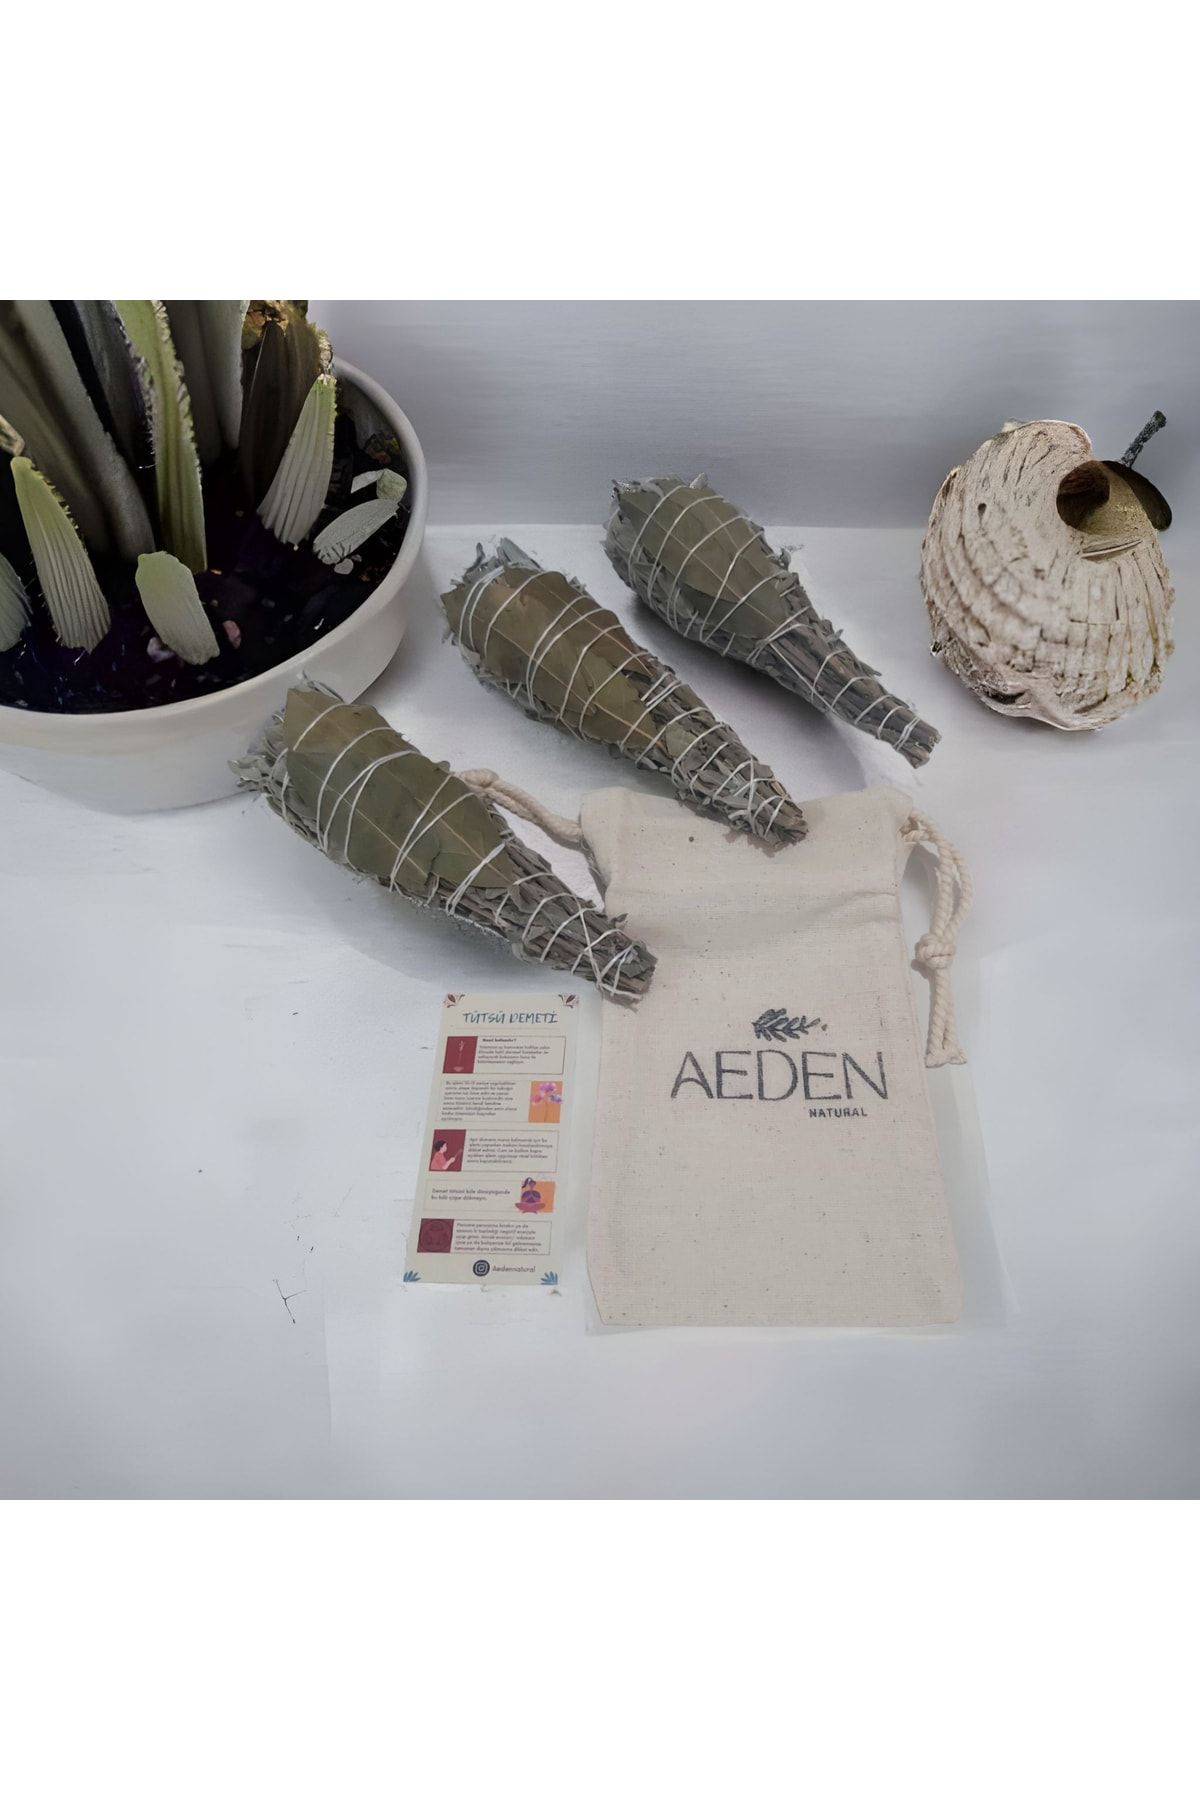 AEDEN Defneli Adaçayı Tütsü Seti Ve Keten Kese